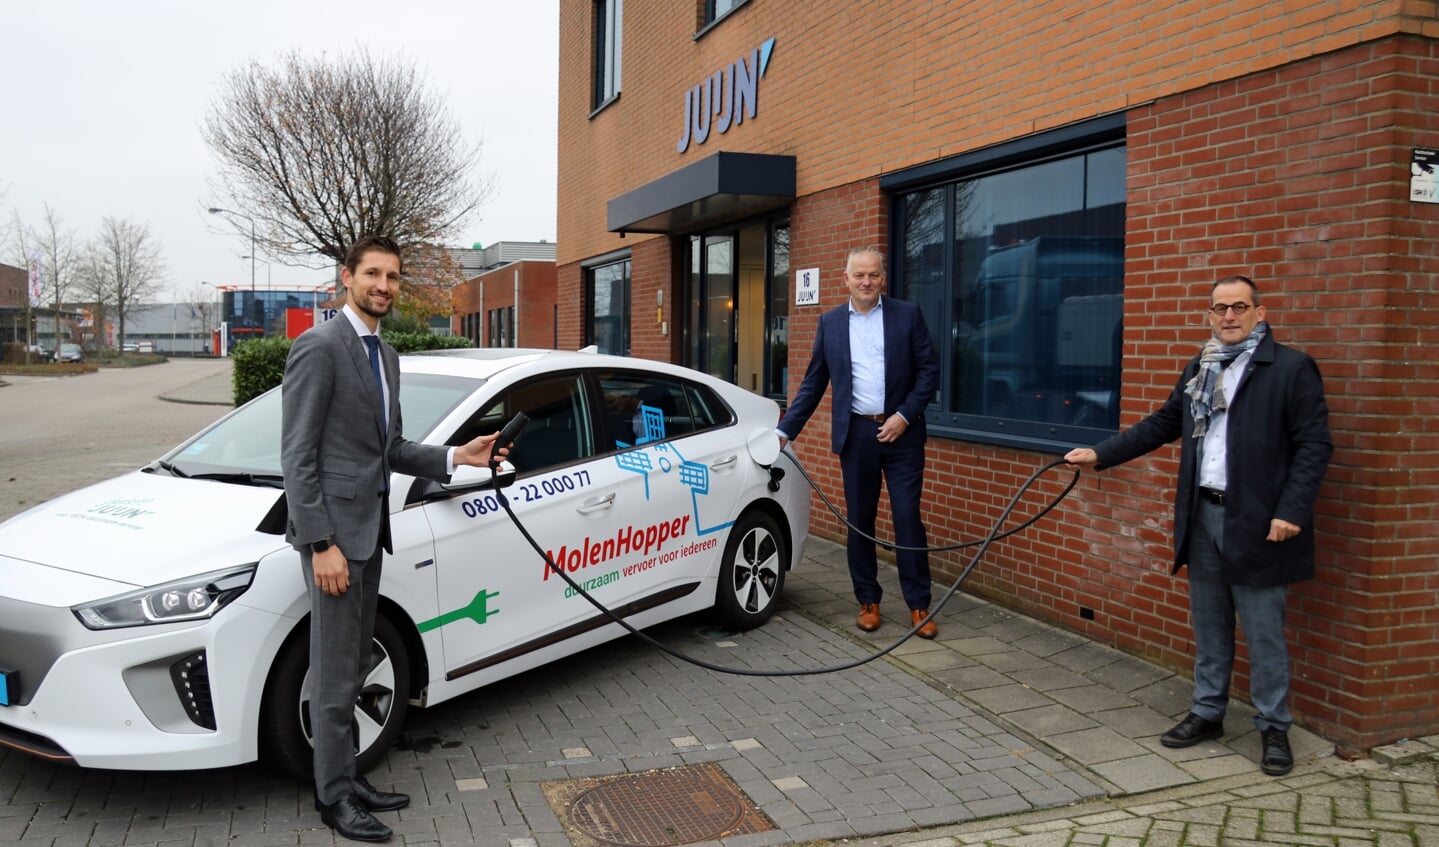 • Wethouder Kraaijeveld, gemeente Gorinchem (links), Arjen Juijn, Vervoersbedrijf Juijn BV (midden) en wethouder Quik (rechts) bij een van de nieuwe elektrische MolenHopper taxi's voor het Wmo-vervoer.